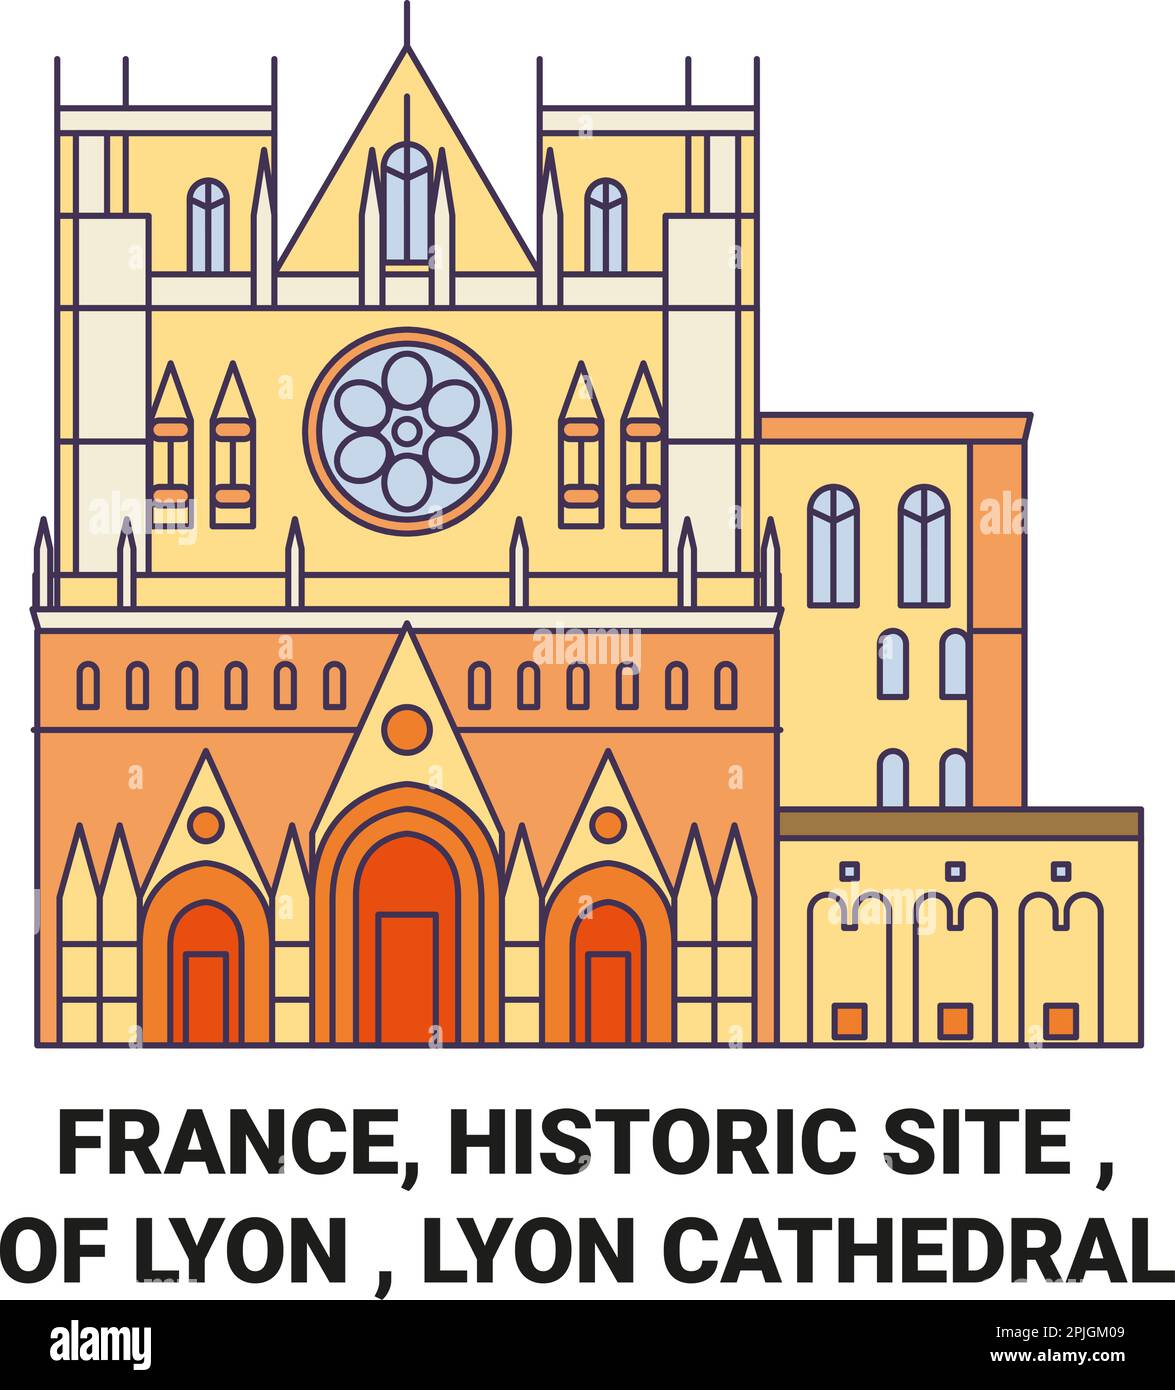 Frankreich, historische Stätte , Lyon Kathedrale, Reise Wahrzeichen Vektordarstellung Stock Vektor